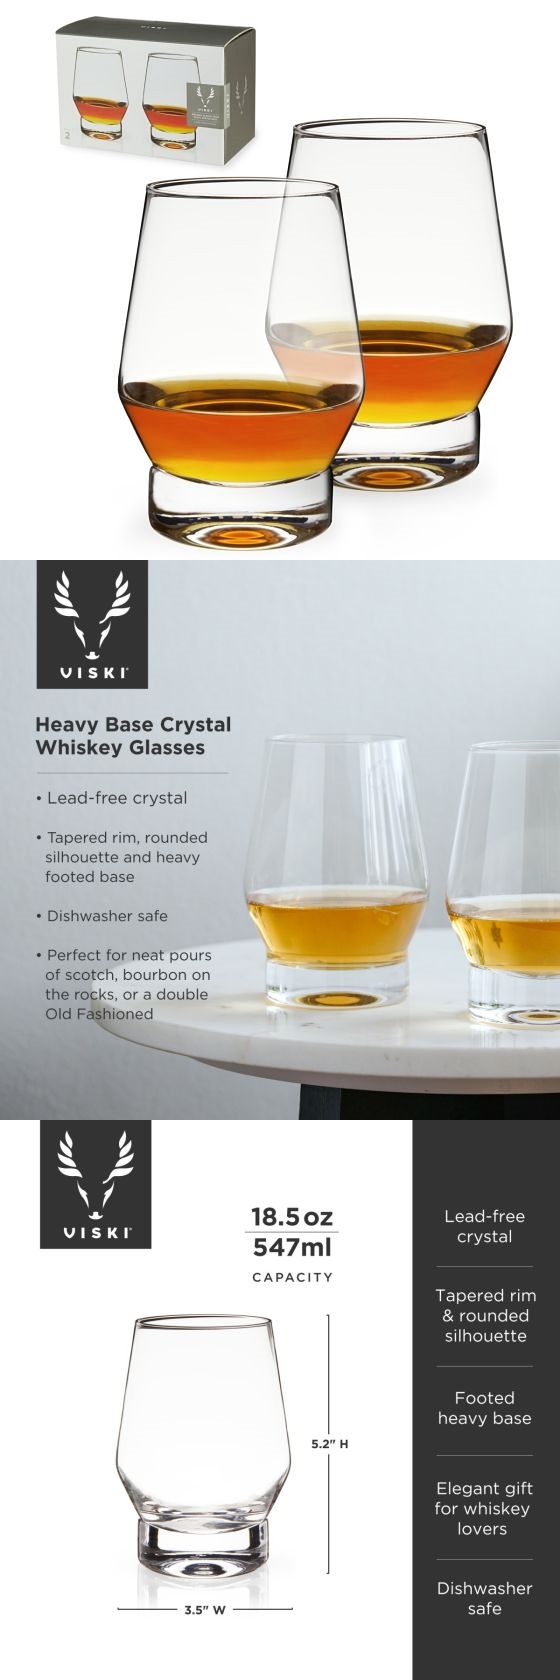 Heavy Base Lead-Free Crystal Whiskey Glasses by VISKI (Set of 2)